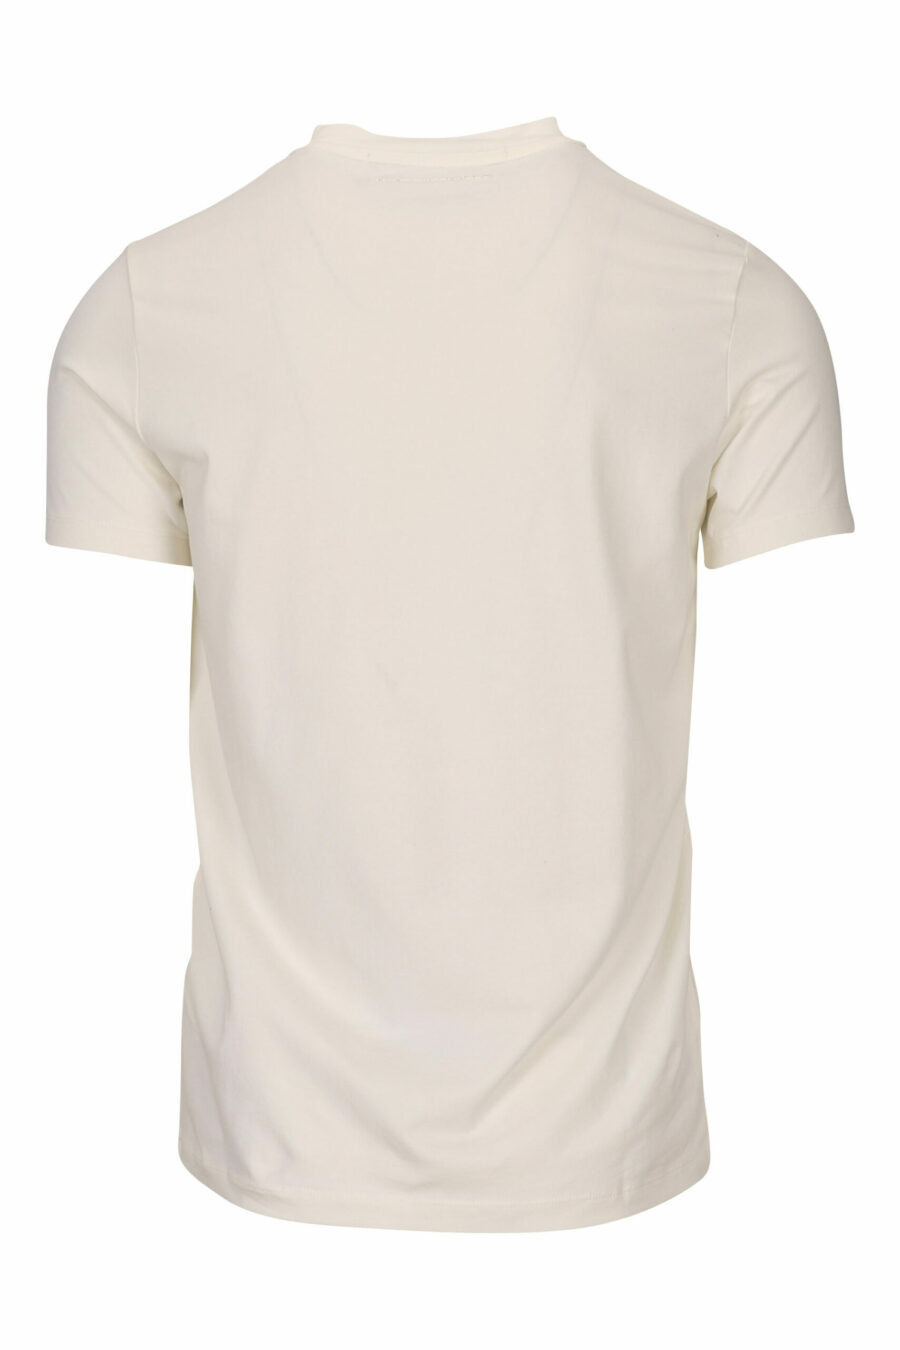 T-shirt branca com maxilogo monocromático "rue st guillaume" - 4062226678124 1 scaled